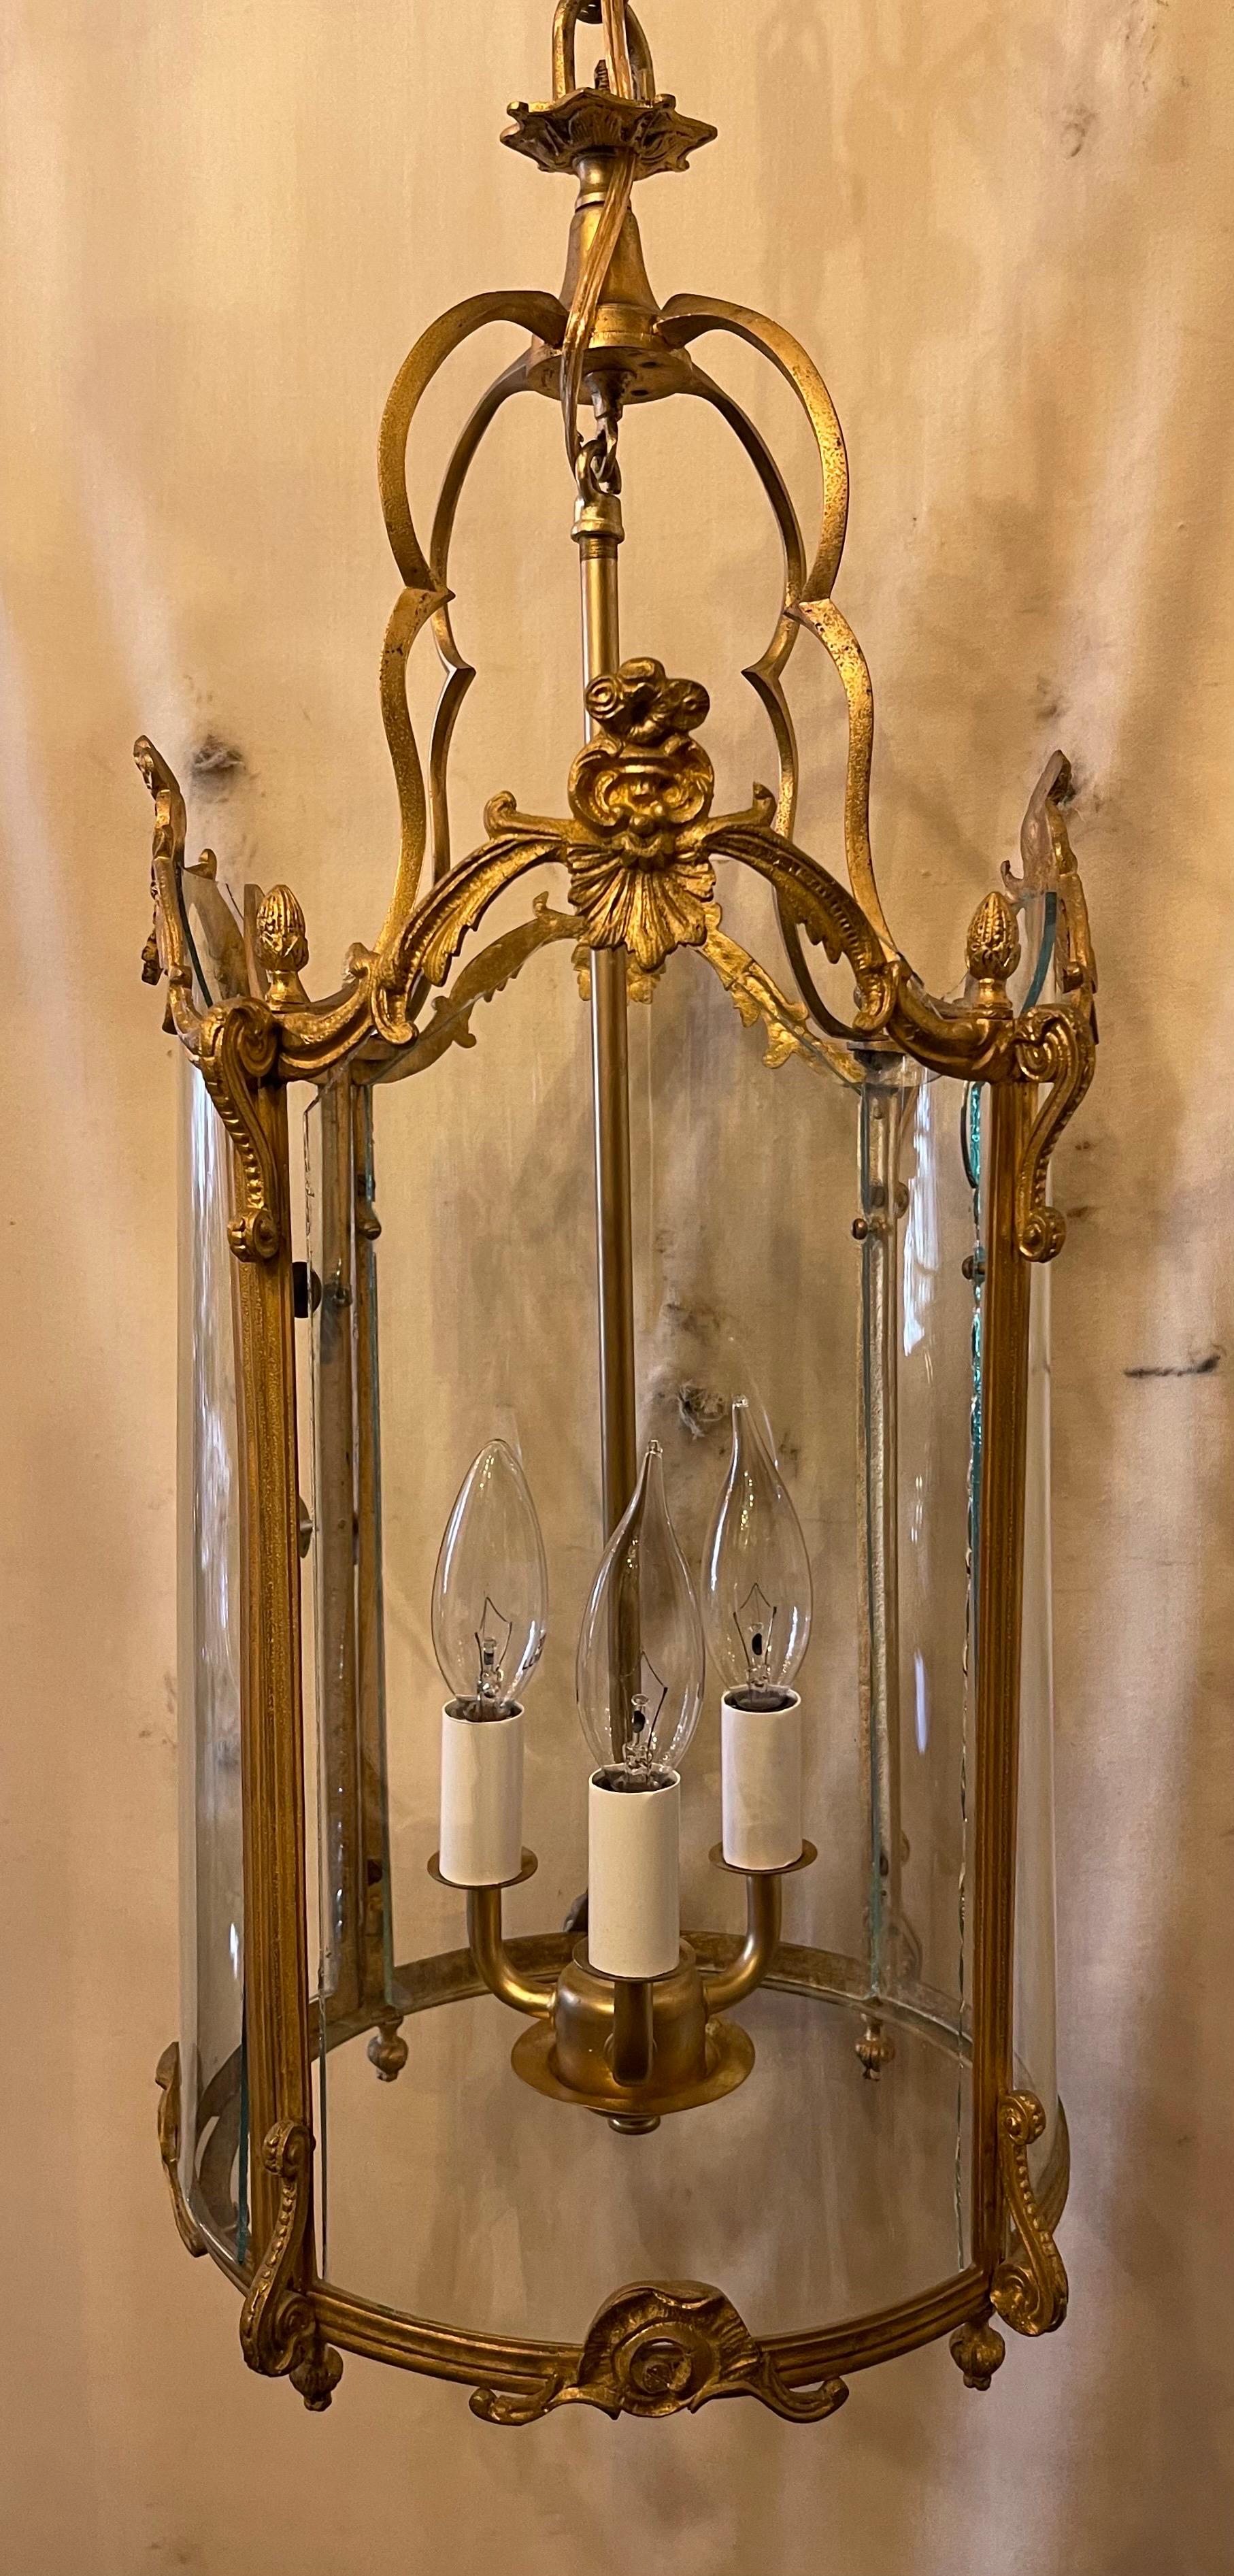 Ein wundervoller französischer Dore-Bronze-Rokoko-Louis-XV-Laternenleuchter mit 3 Kandelabern in einem mundgeblasenen und geschliffenen, gewölbten Glasgehäuse mit einer Türscheibe wurde neu verkabelt.
halterung wird mit Kette und Baldachin